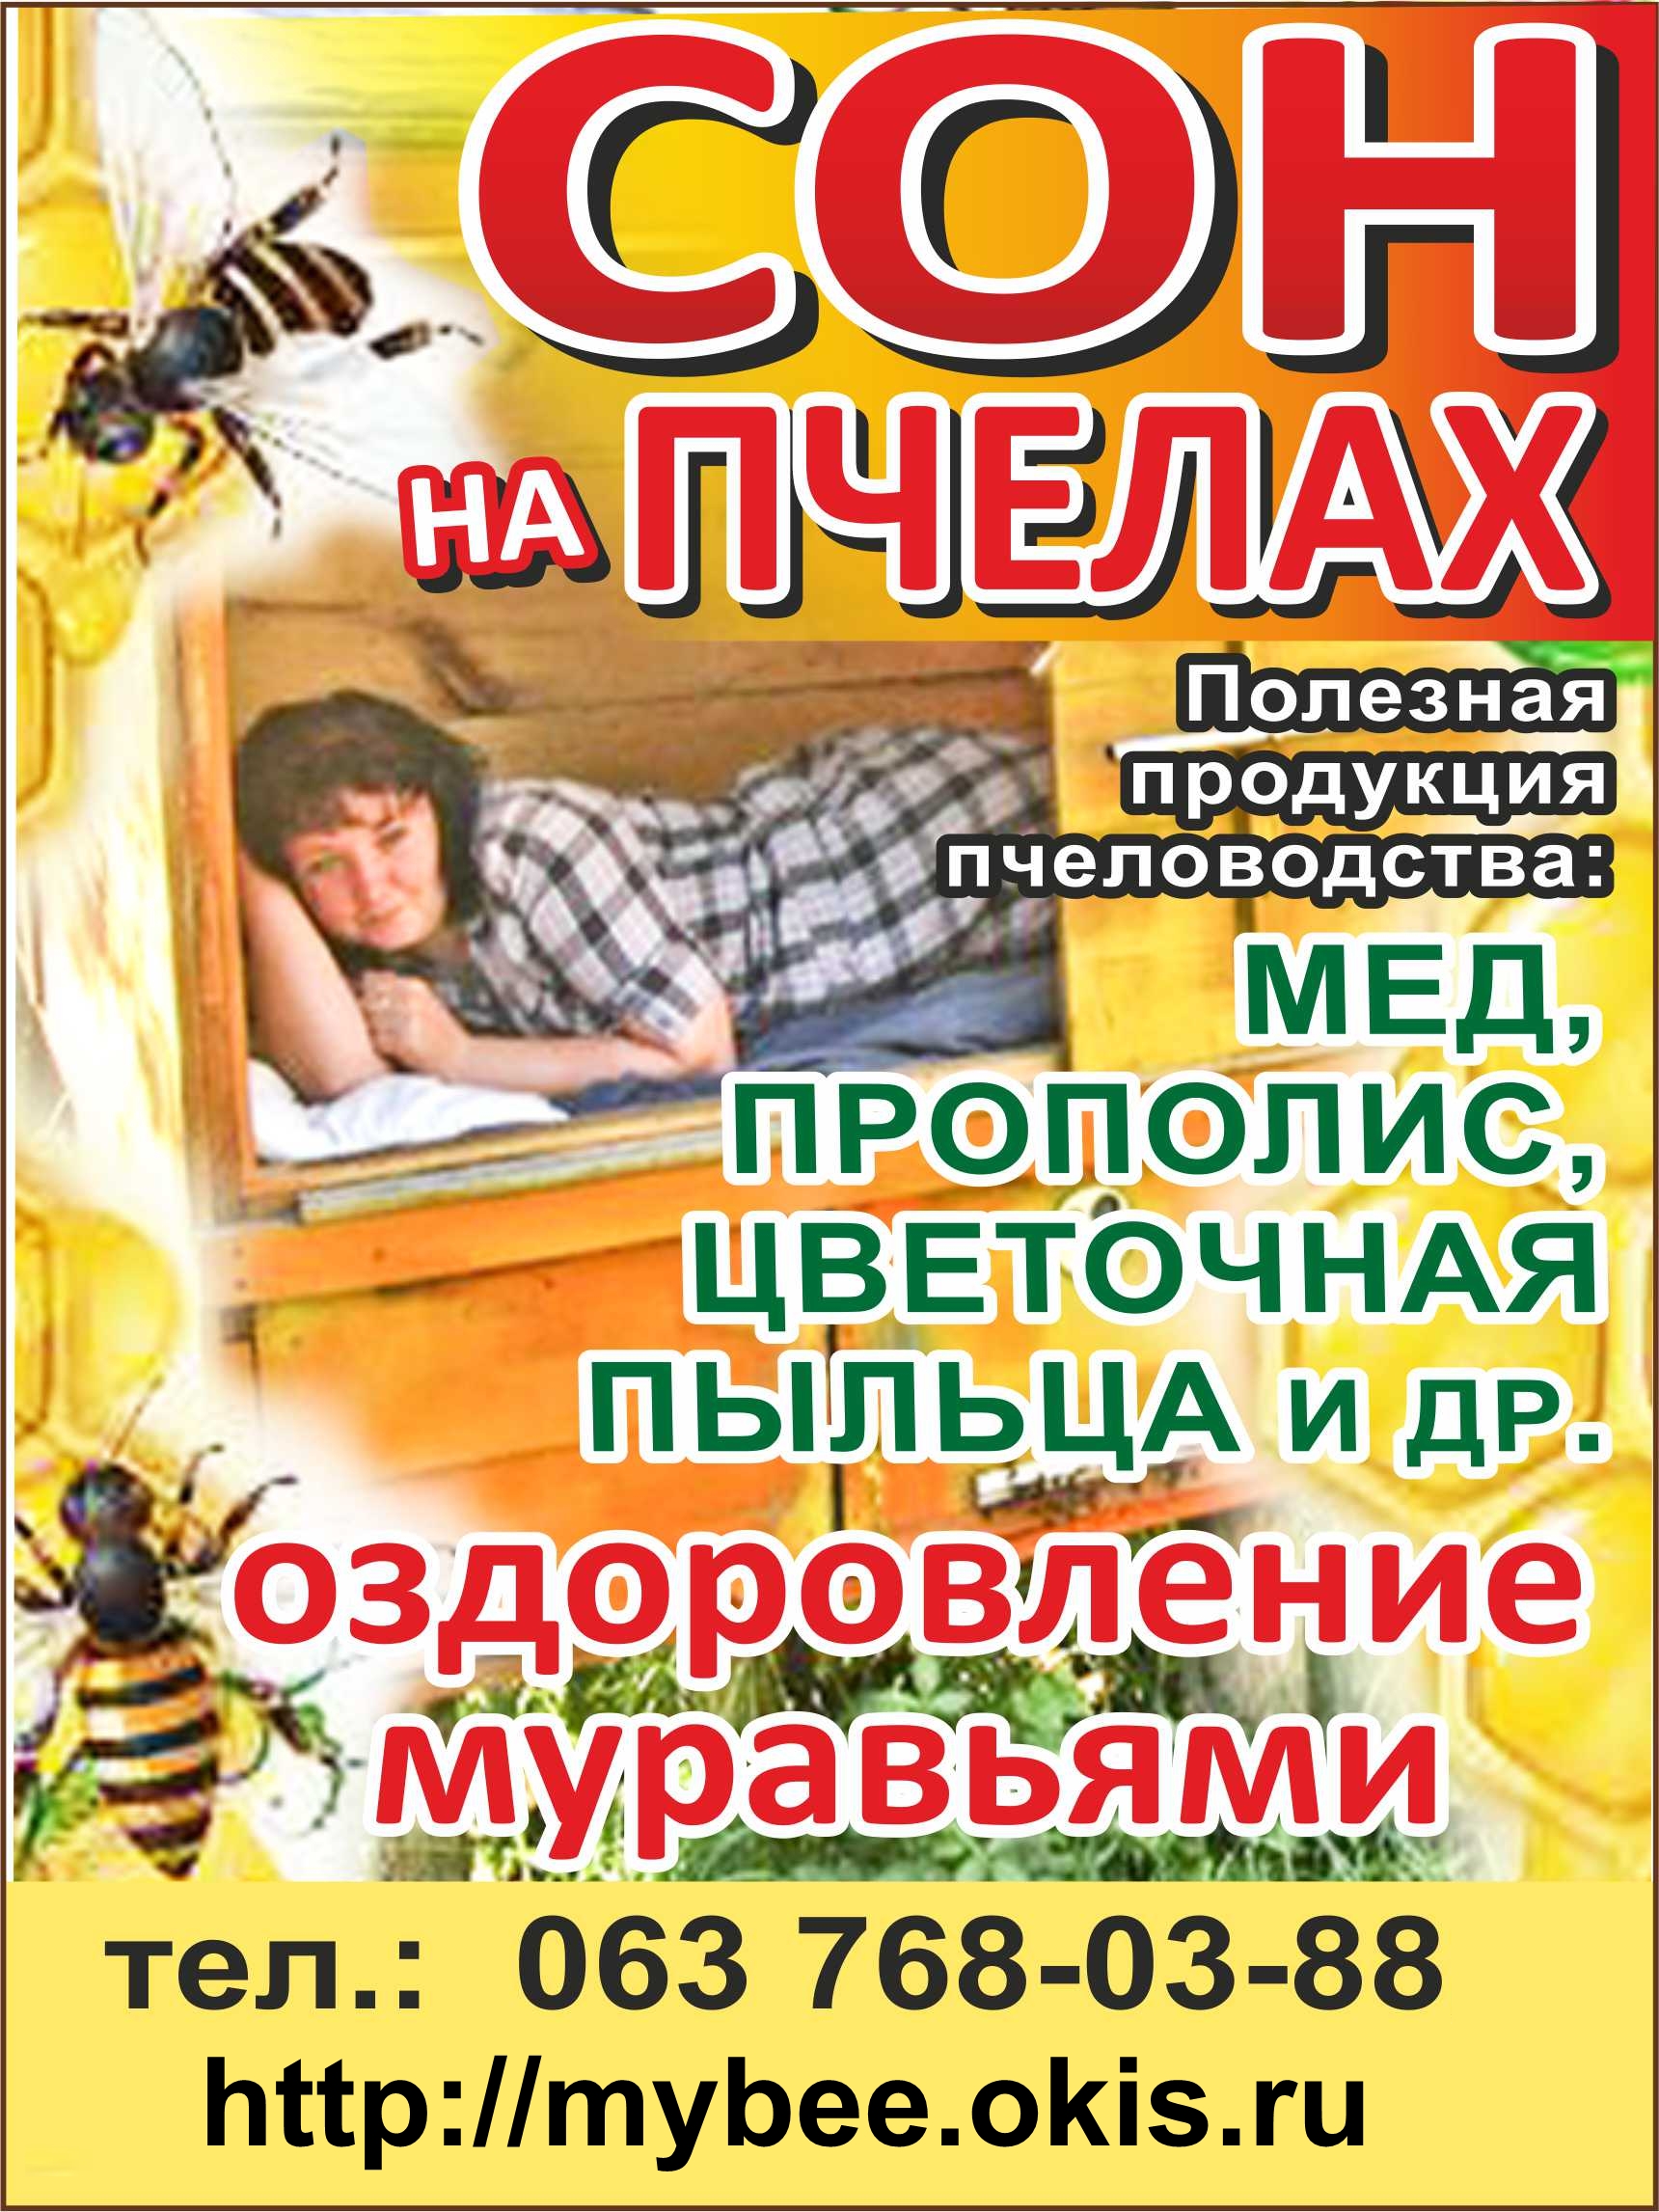 Сон с пчёлами и оздоровление муравьями